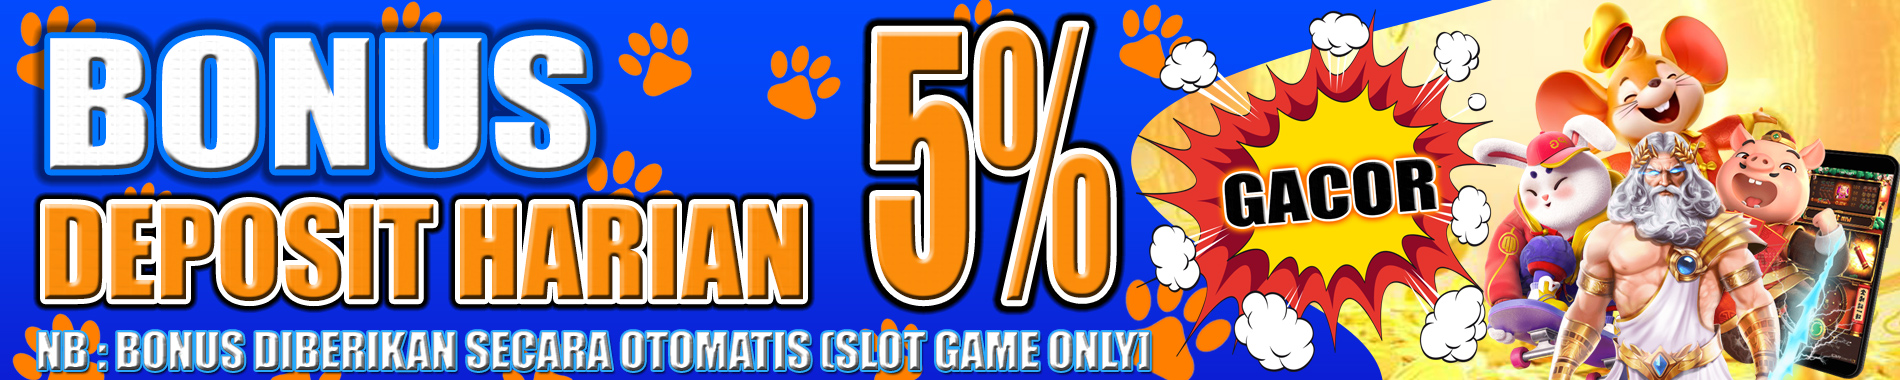 Bonus Deposit Harian 5% Slot Games